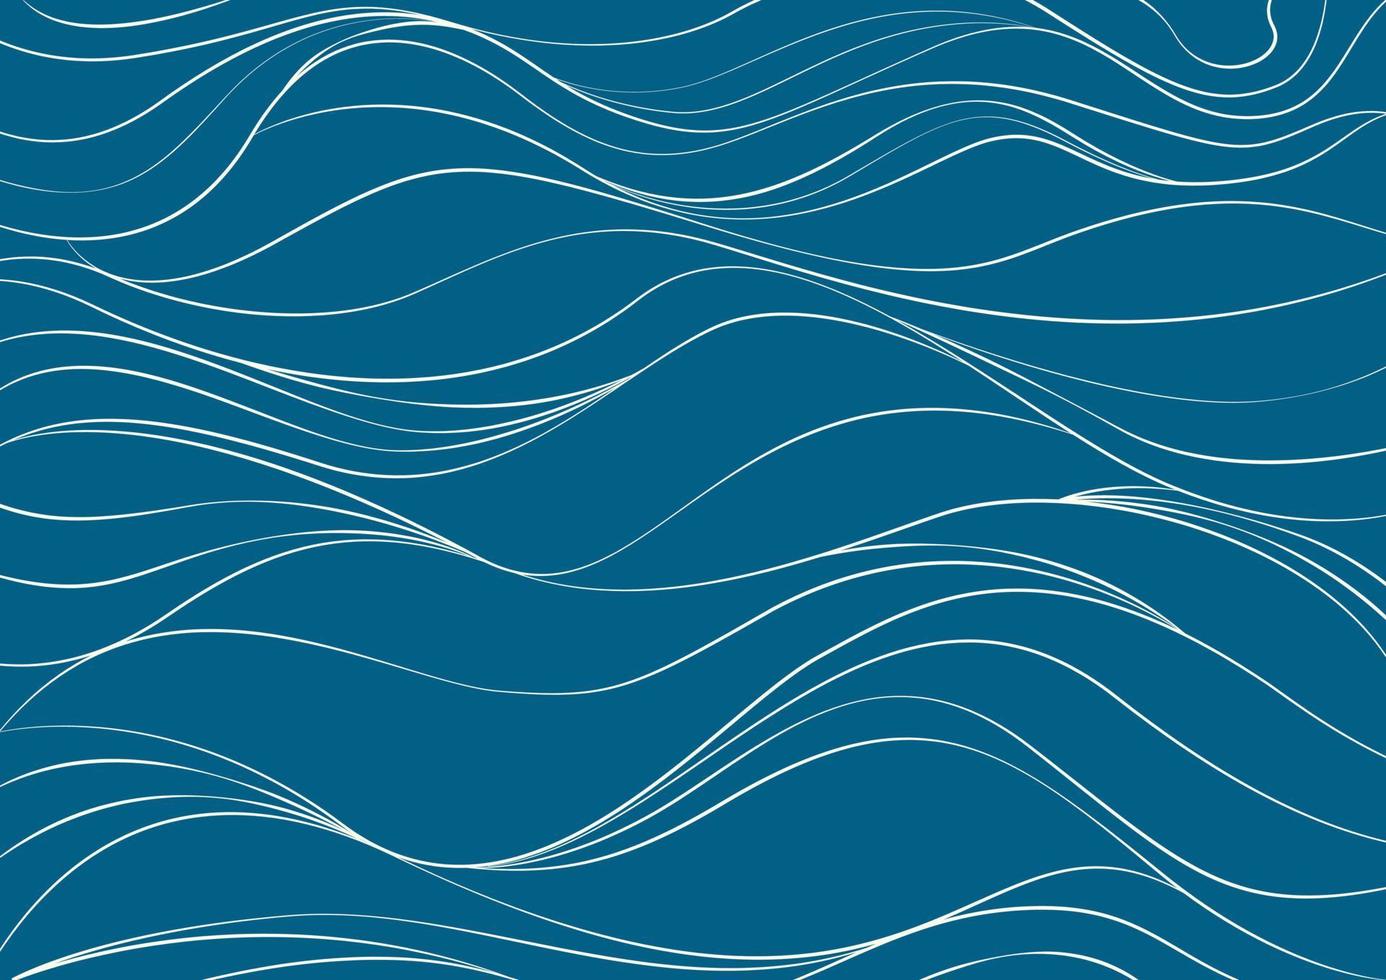 modelo de fundo de textura abstrata de água, mar, aqua, oceano, rio ou montanha. doodle linha ondulada curva onda linear forma livre repetição padrão ripple ripple. design de ilustração vetorial plana vetor